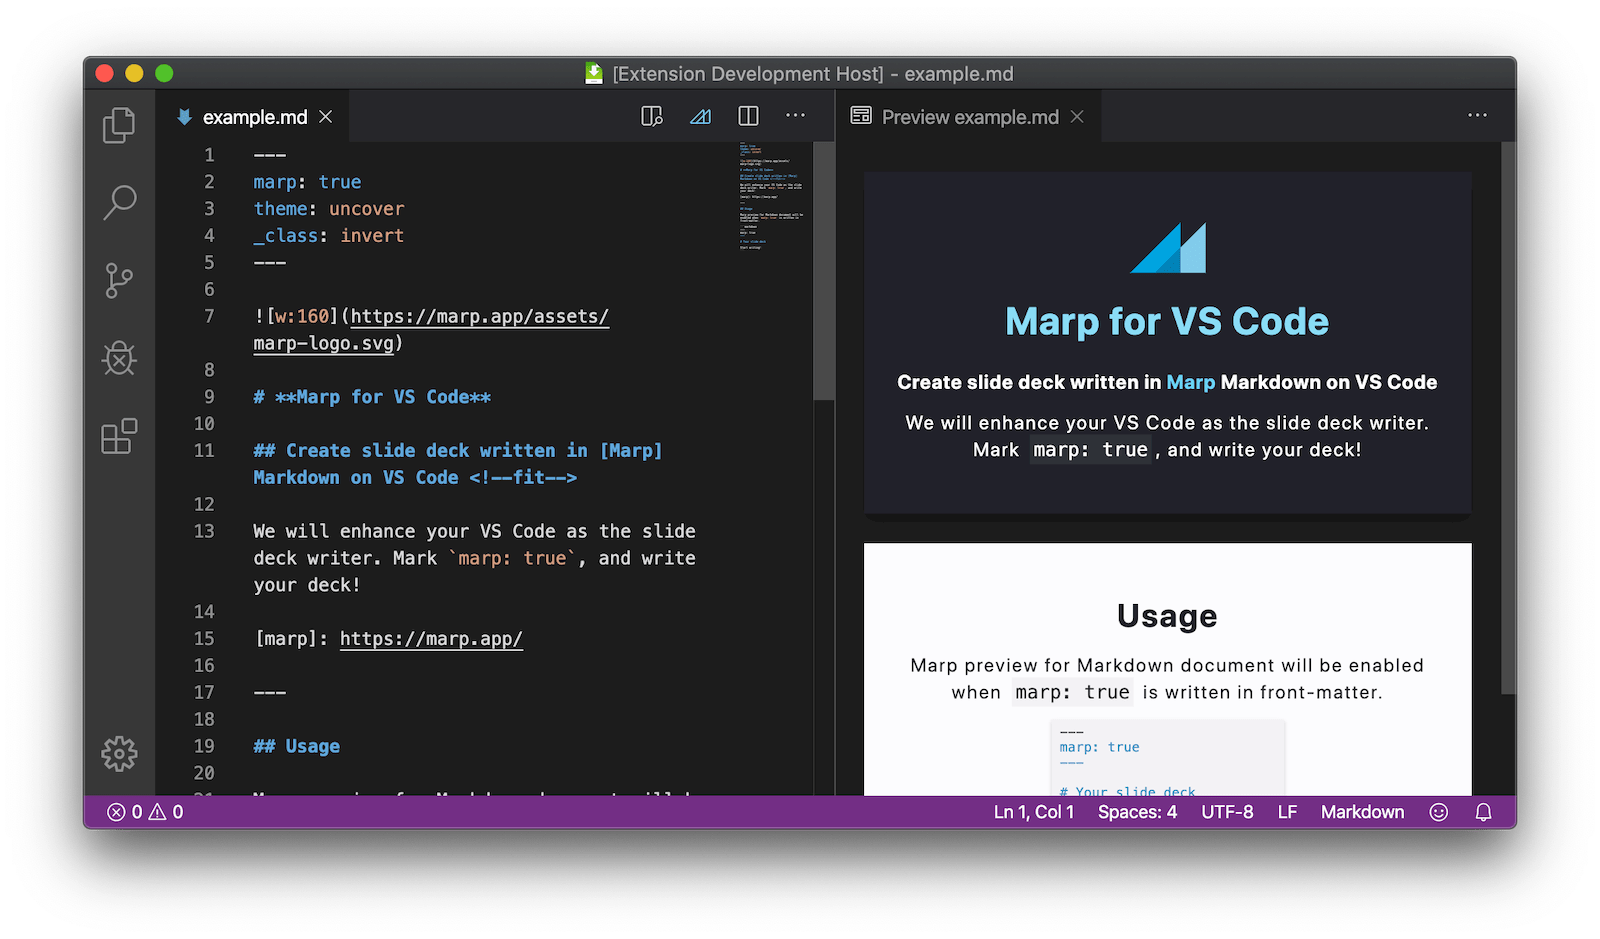 Marp for VS Code